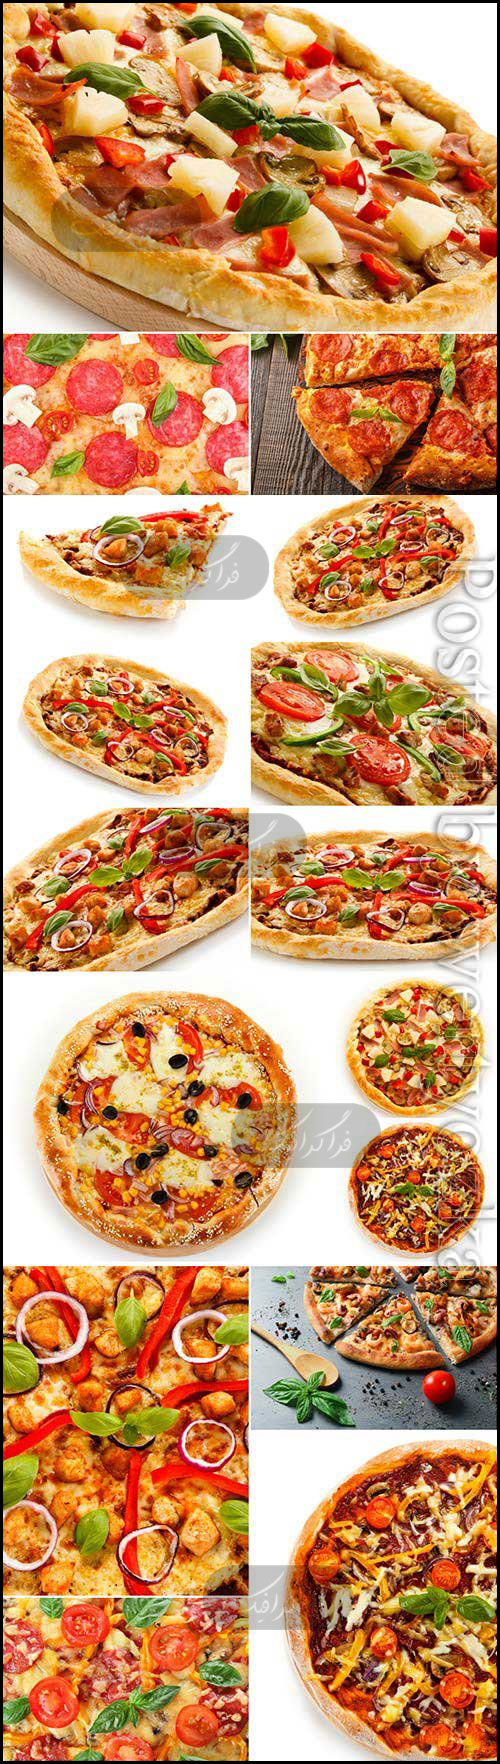 دانلود تصاویر استوک پیتزا - Pizza Stock Images - شماره 9